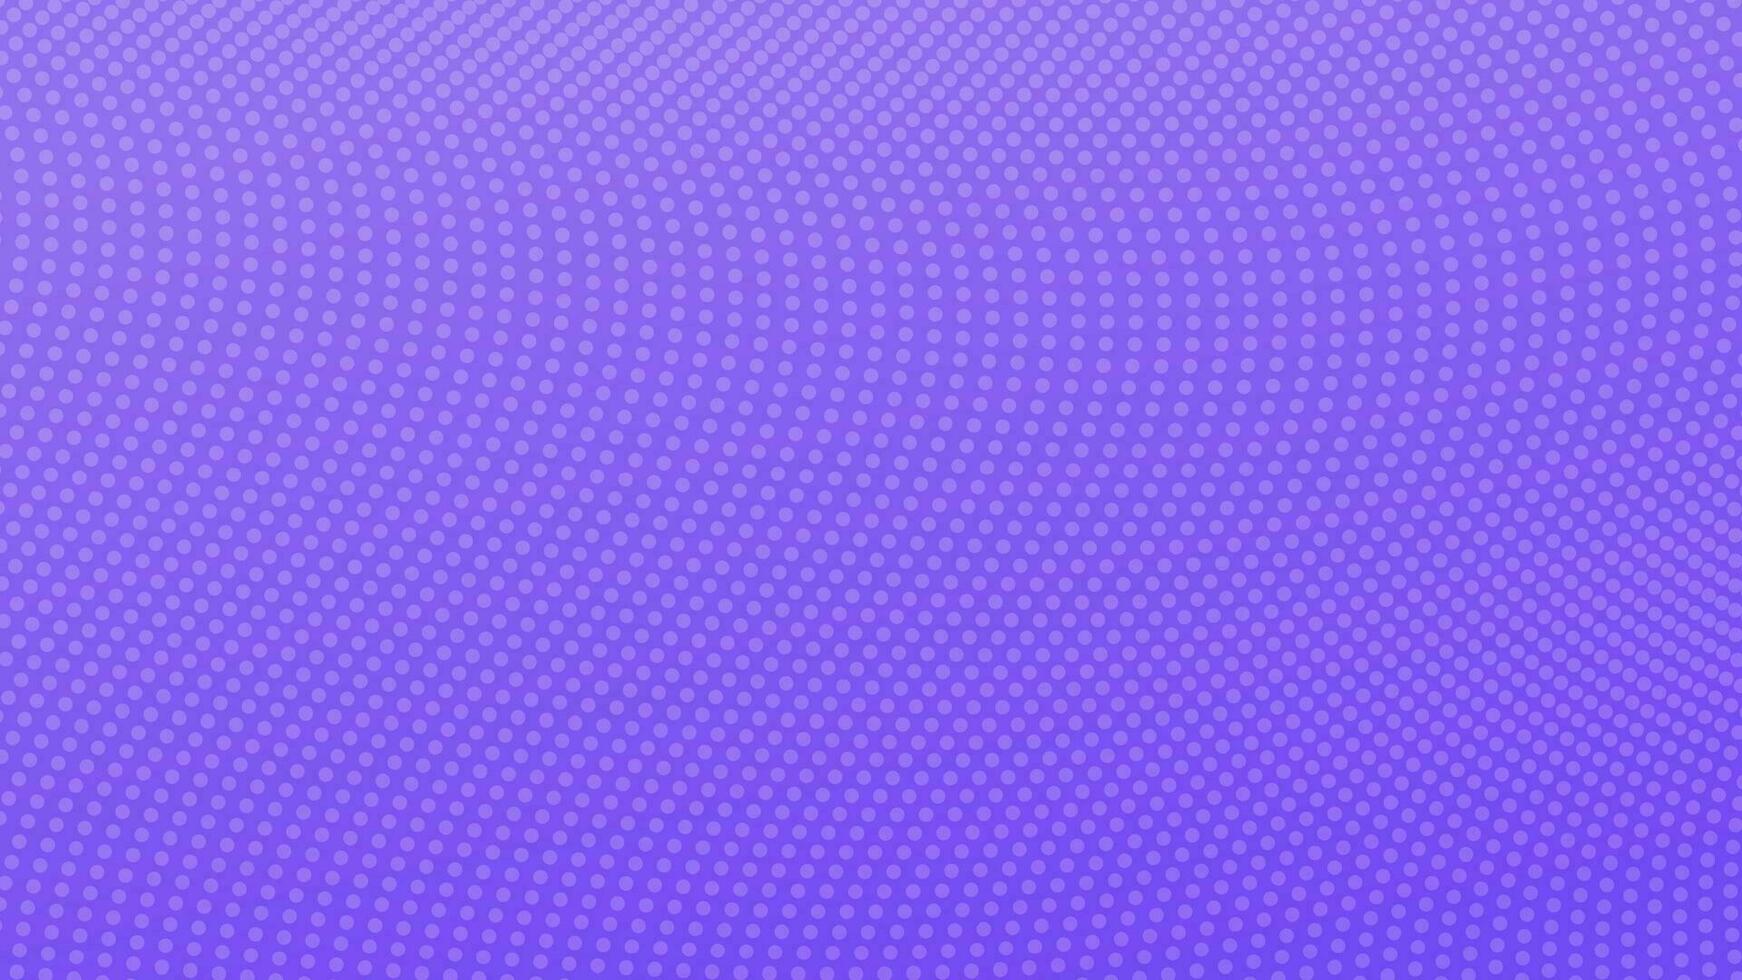 Halbton Gradient Hintergrund mit Punkte. abstrakt violett gepunktet Pop Kunst Muster im Comic Stil. Vektor Illustration